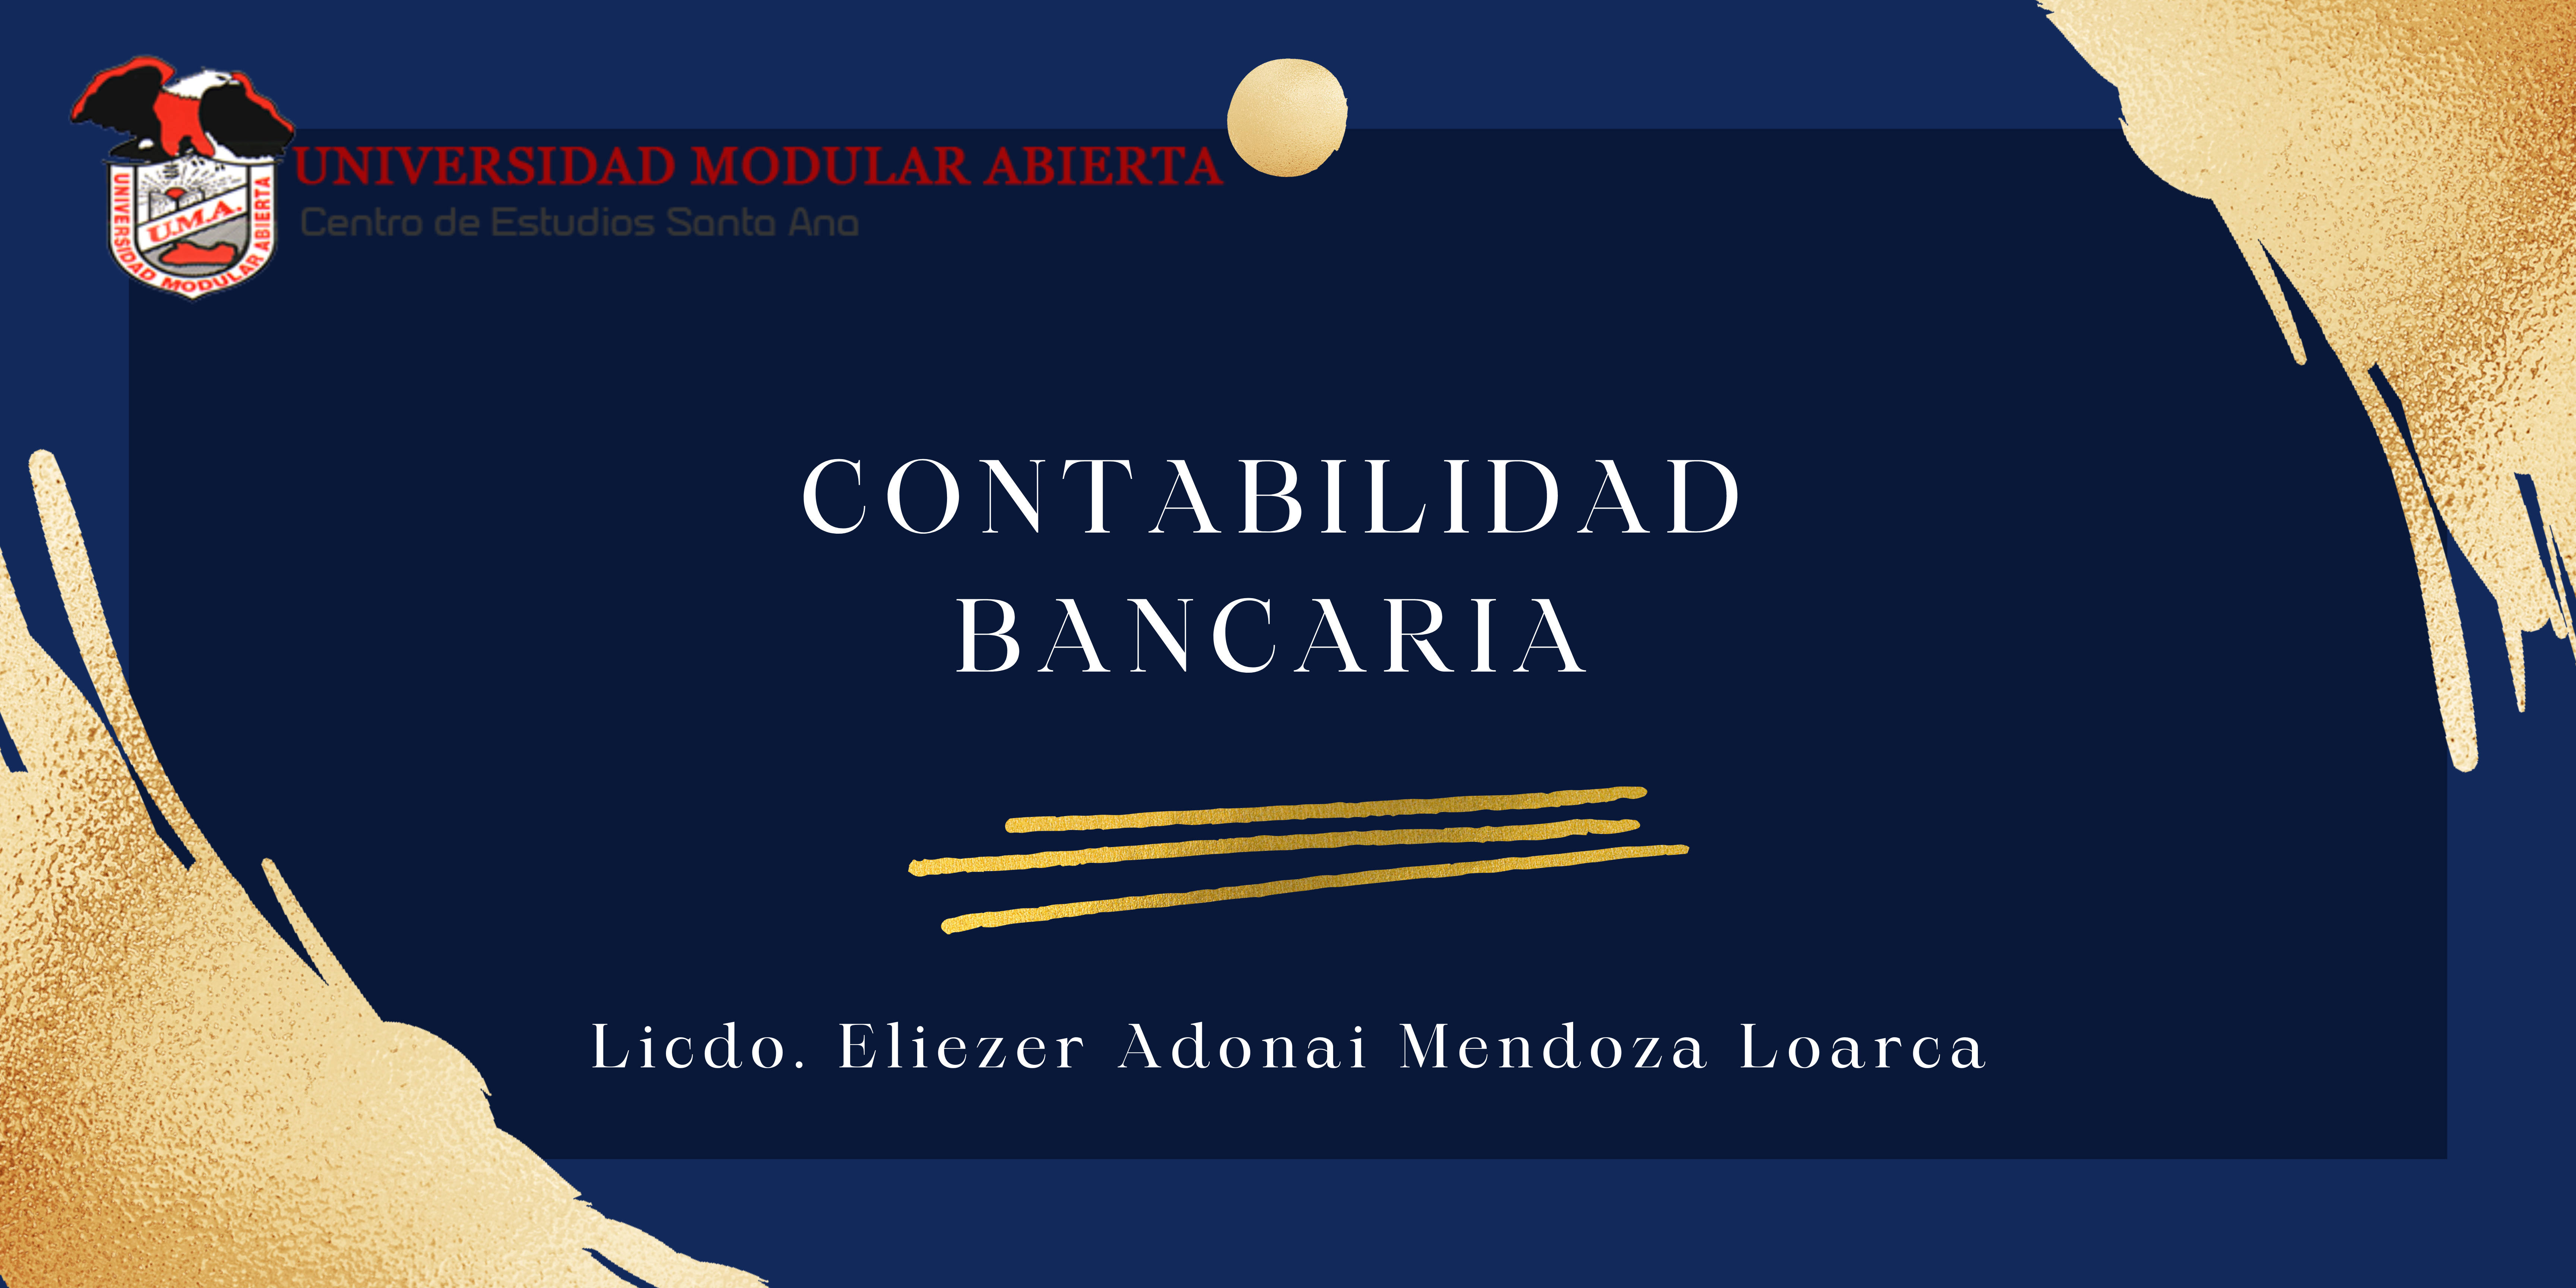 Contabilidad Bancaria -J- (Licdo. Eliezer Adonai Mendoza Loarca)